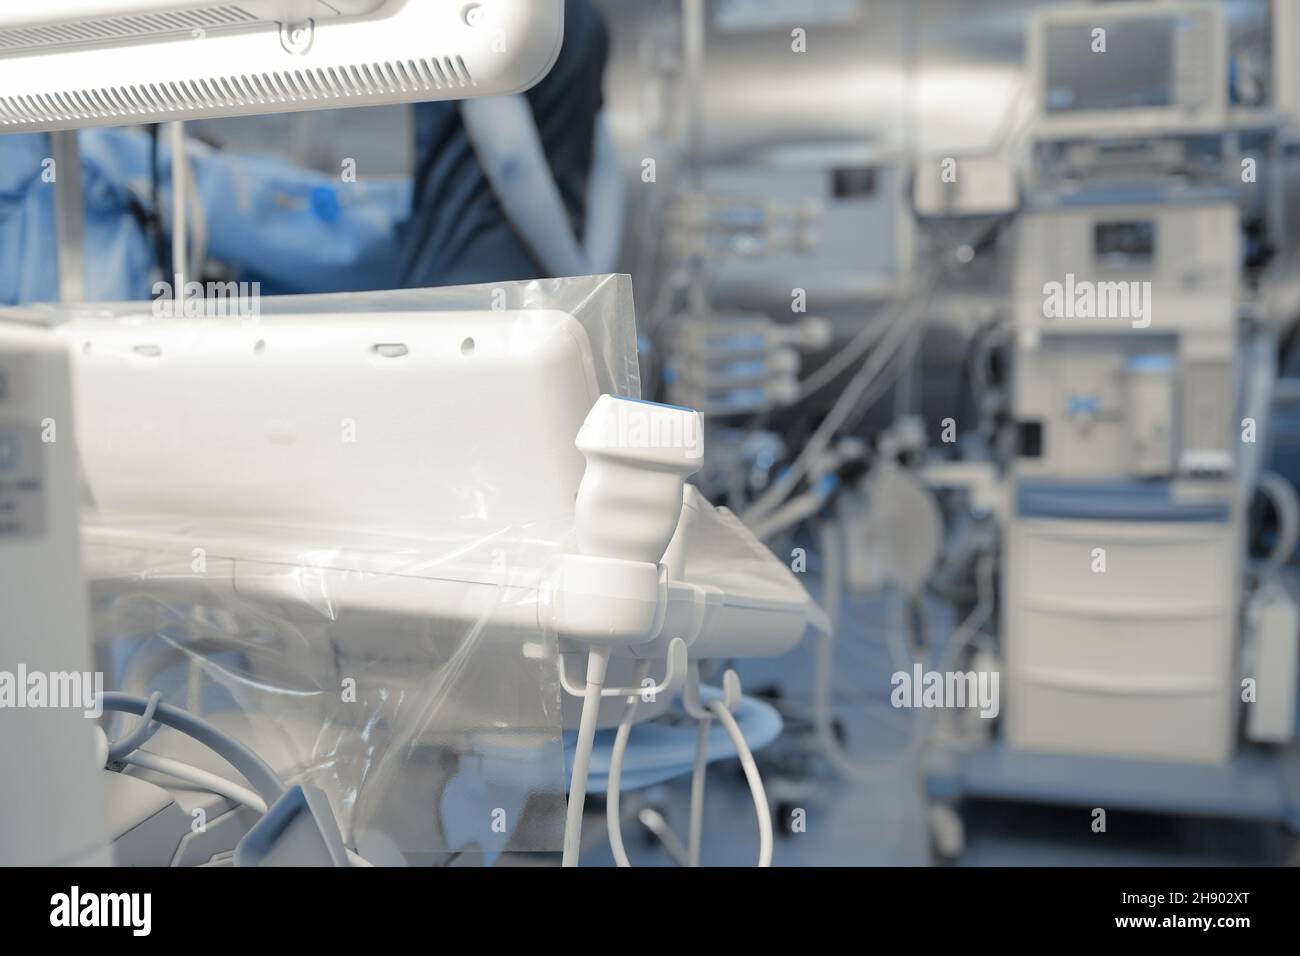 Sensor des Ultraschallgeräts im medizinischen Raum, gefüllt mit allen möglichen medizinischen Geräten Stockfoto